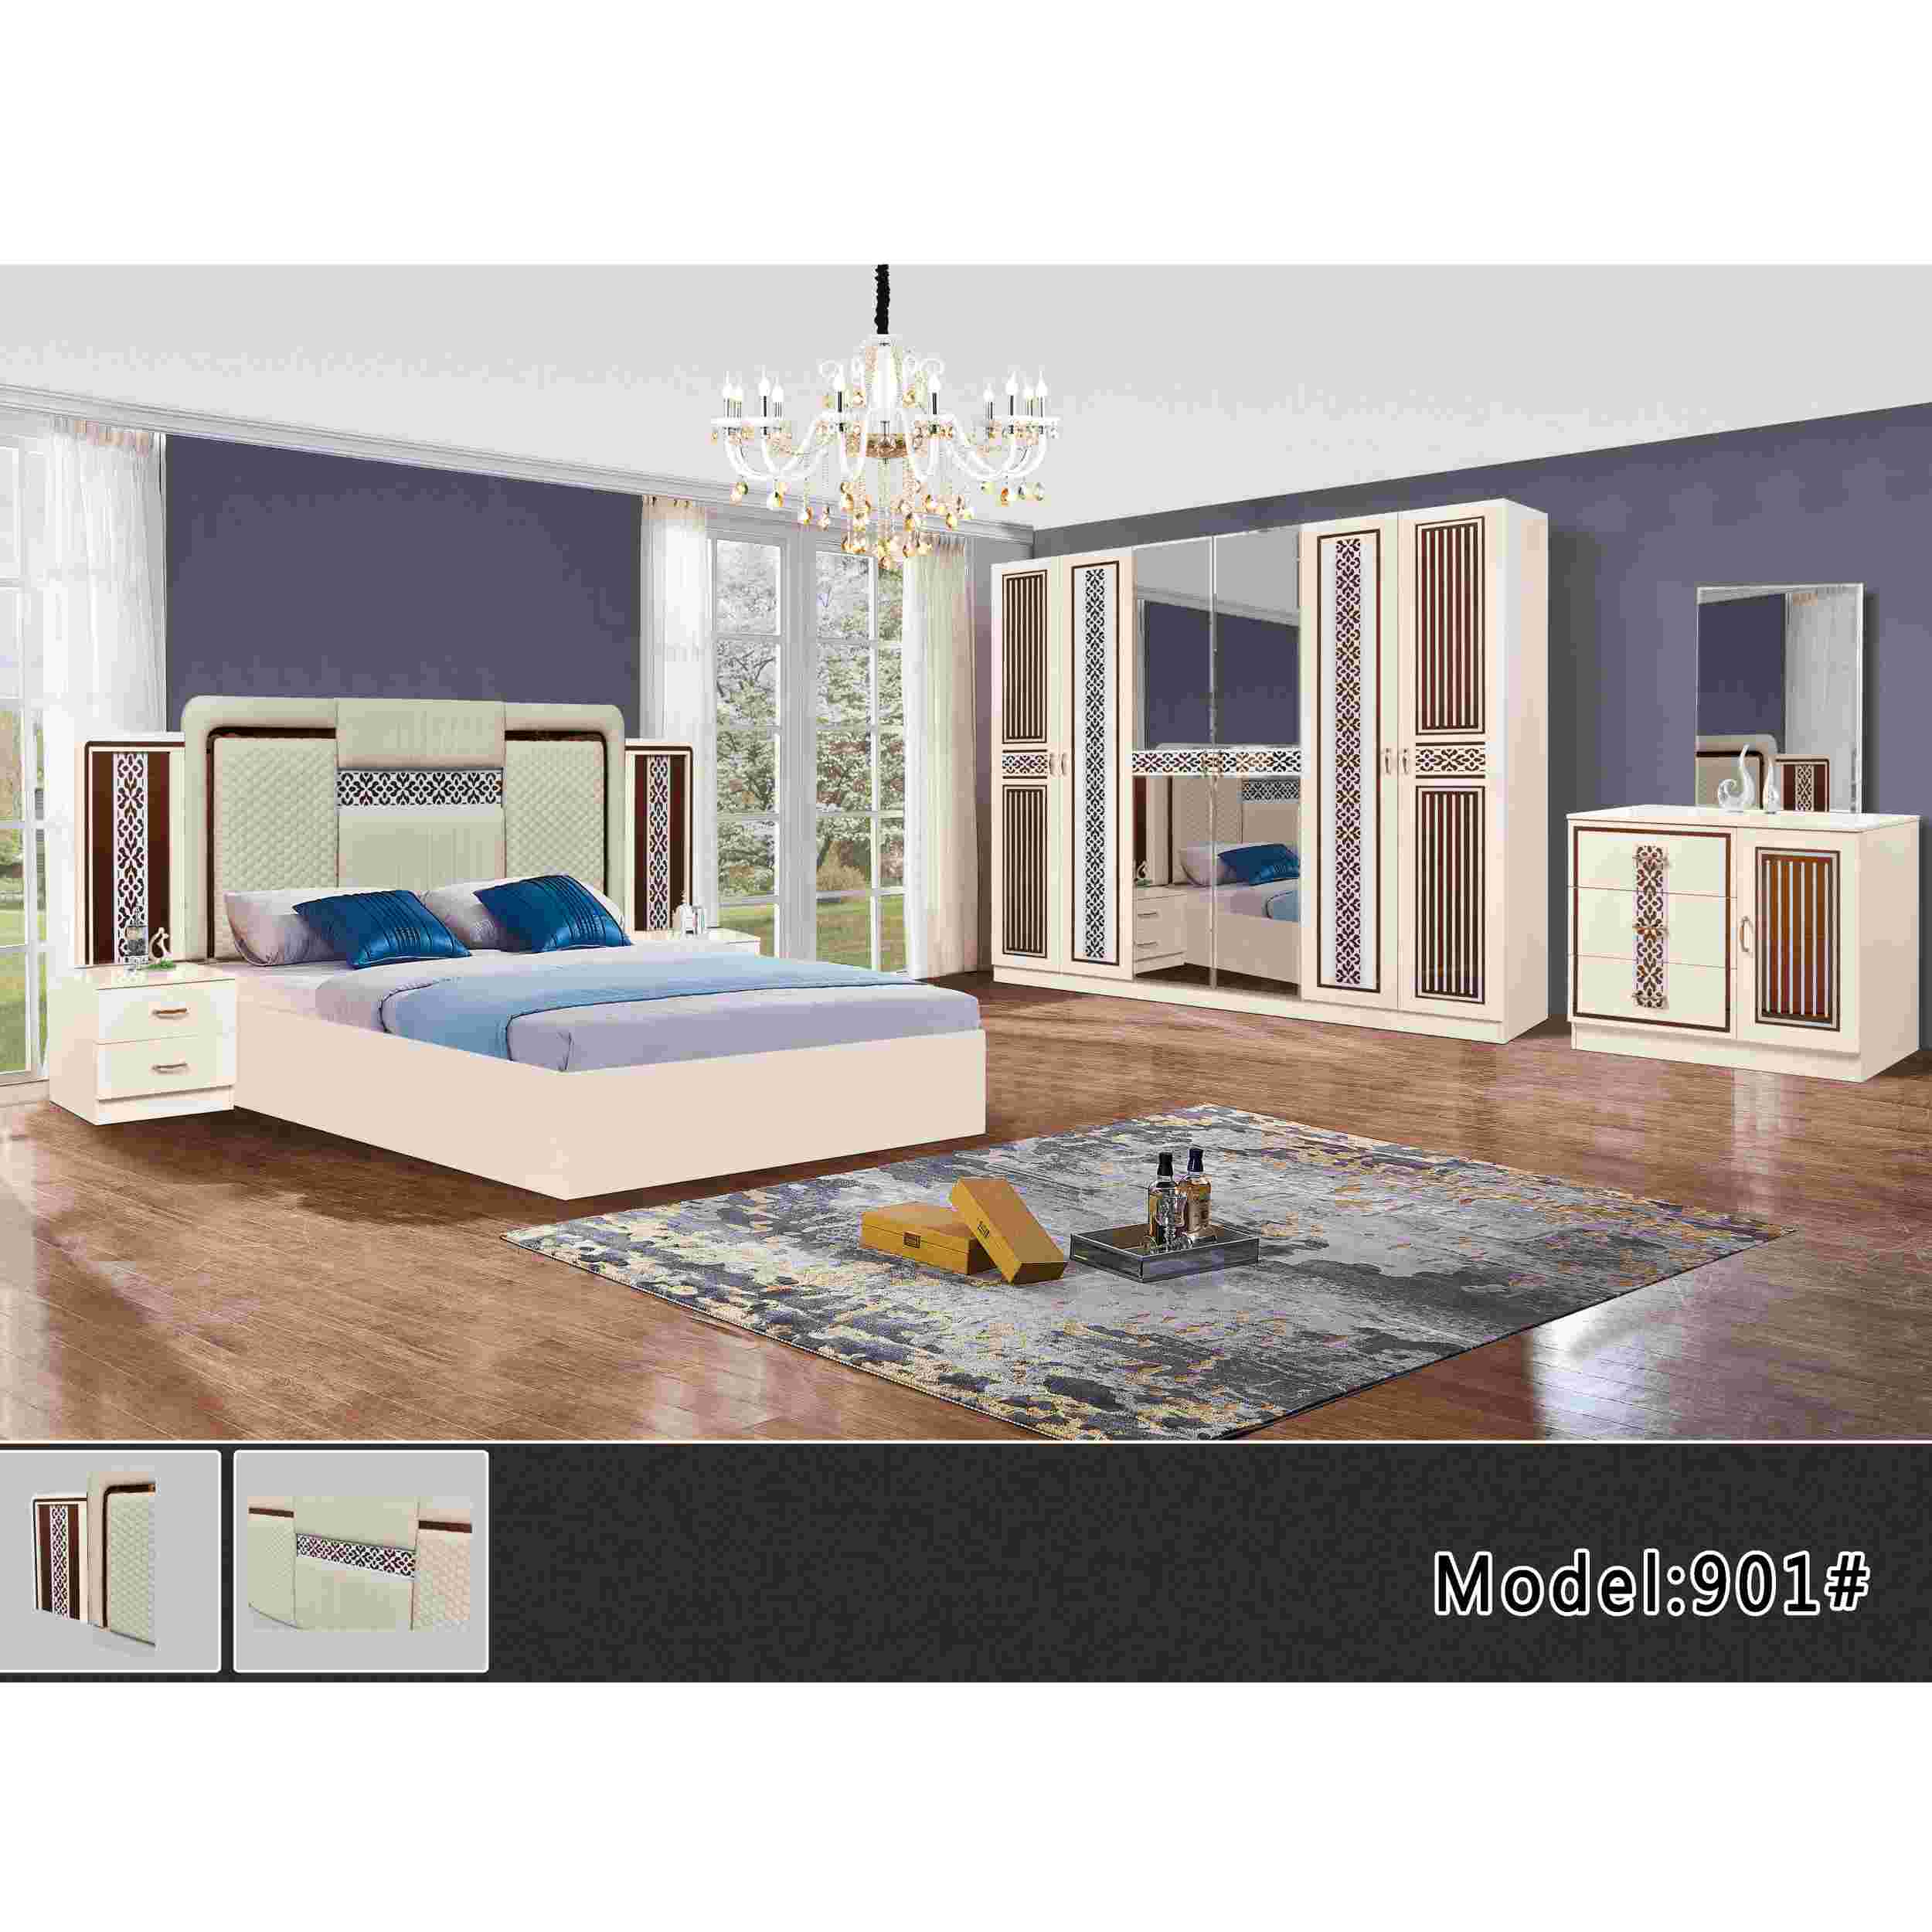 Moderne høj soveværelse sæt designs